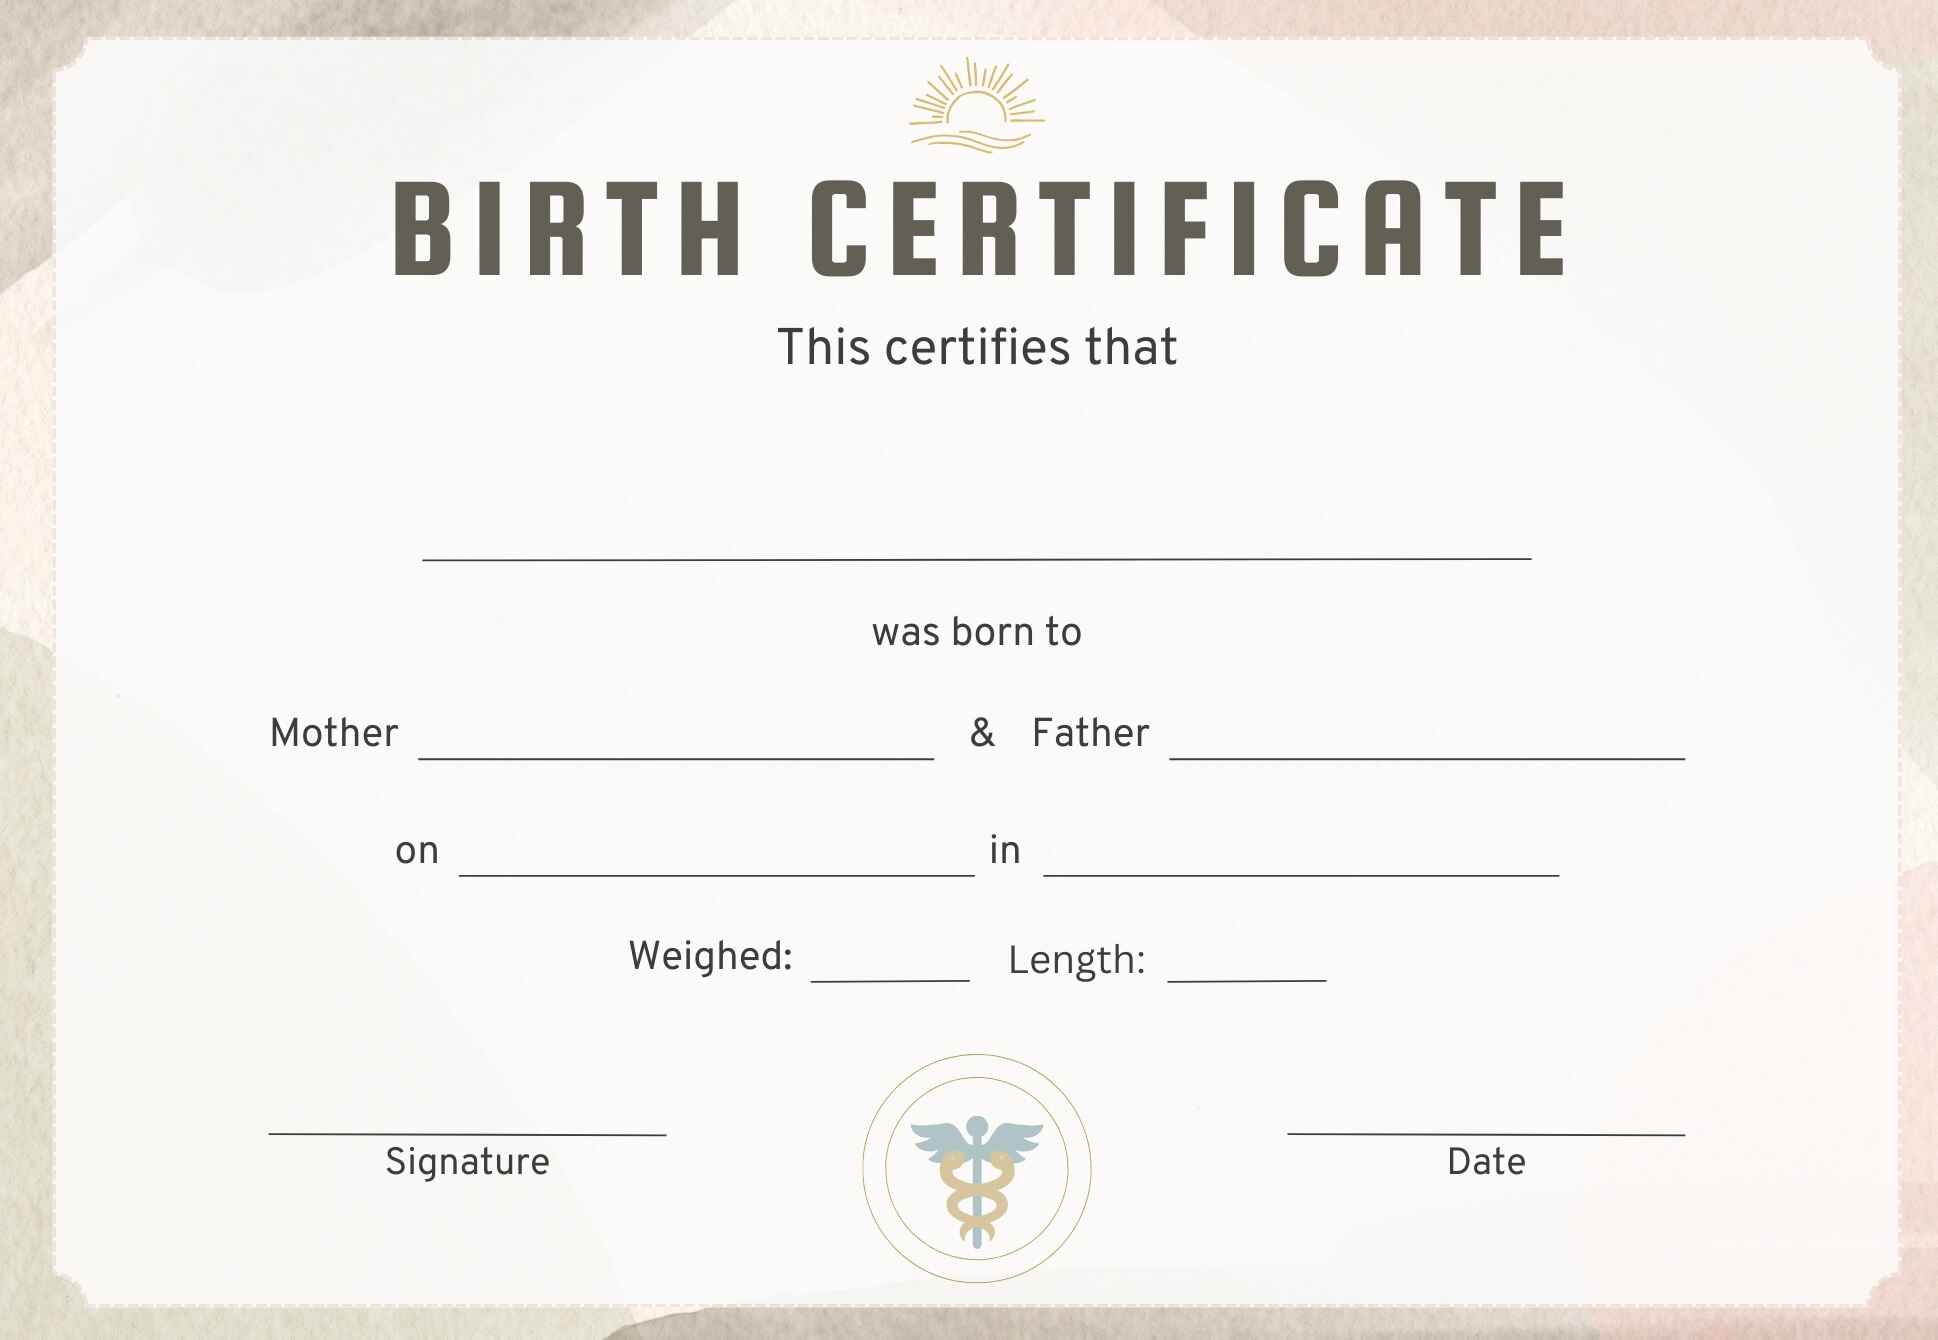 Birth Certificate (जन्म प्रमाणपत्र)